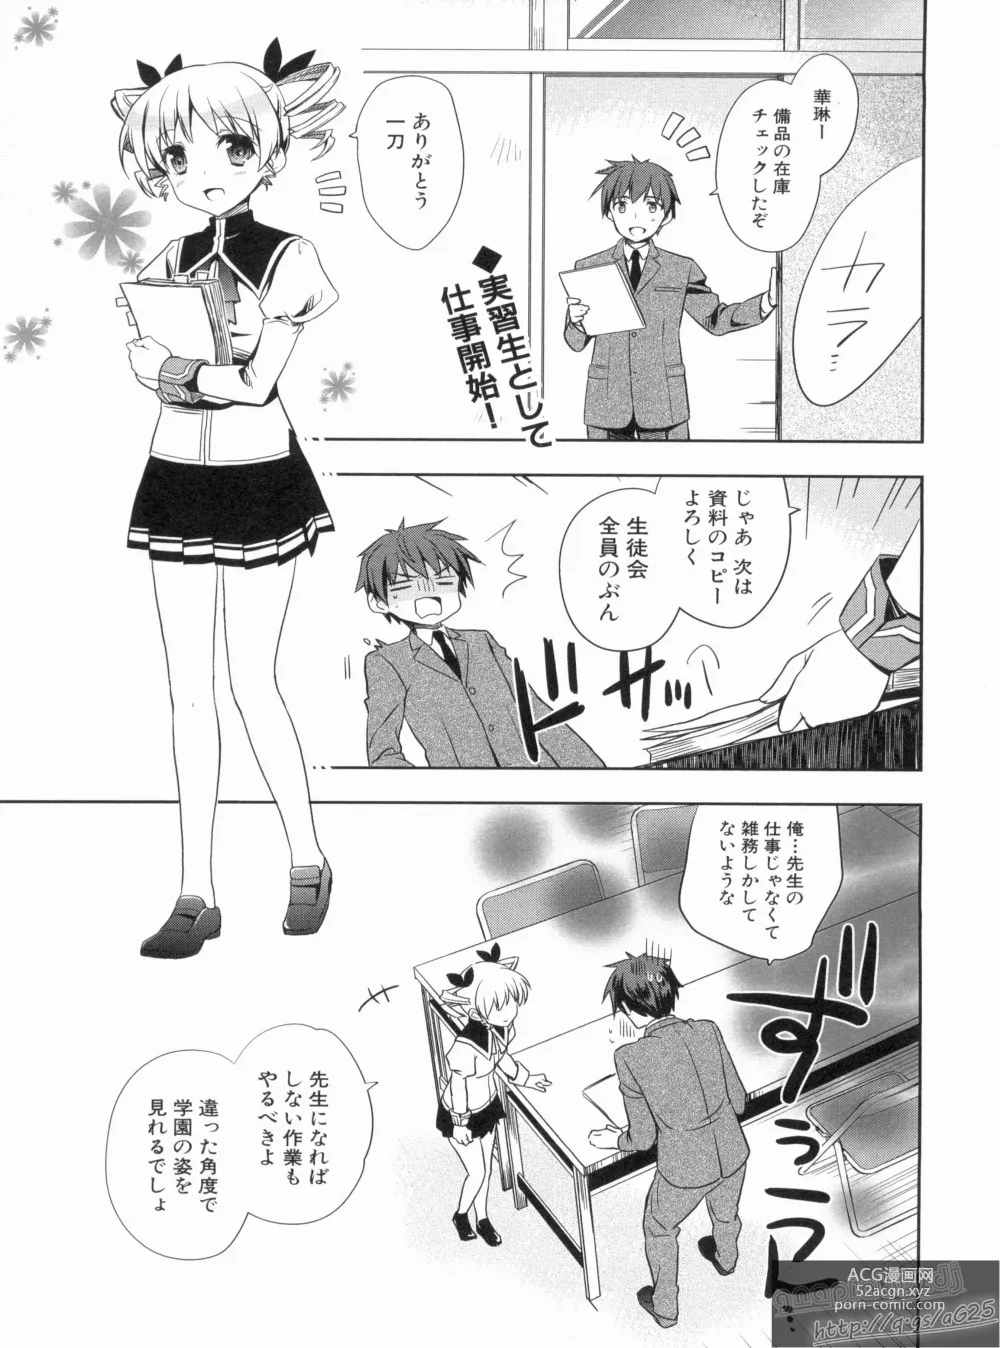 Page 7 of manga Shin Koihime Musou Gaishi Saiten VOL.3